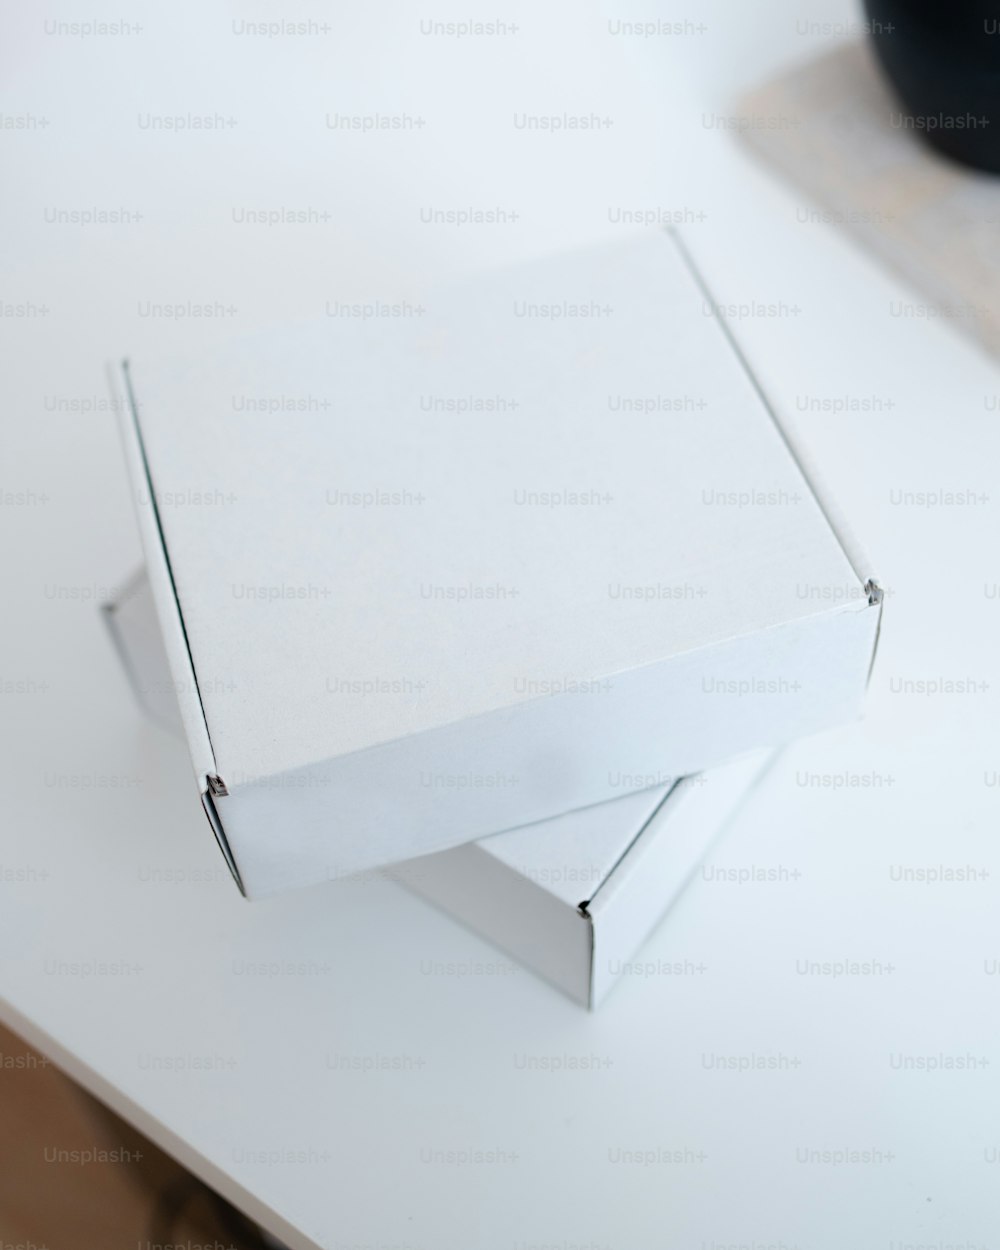 하얀 탁자 위에 놓여 있는 하얀 상자